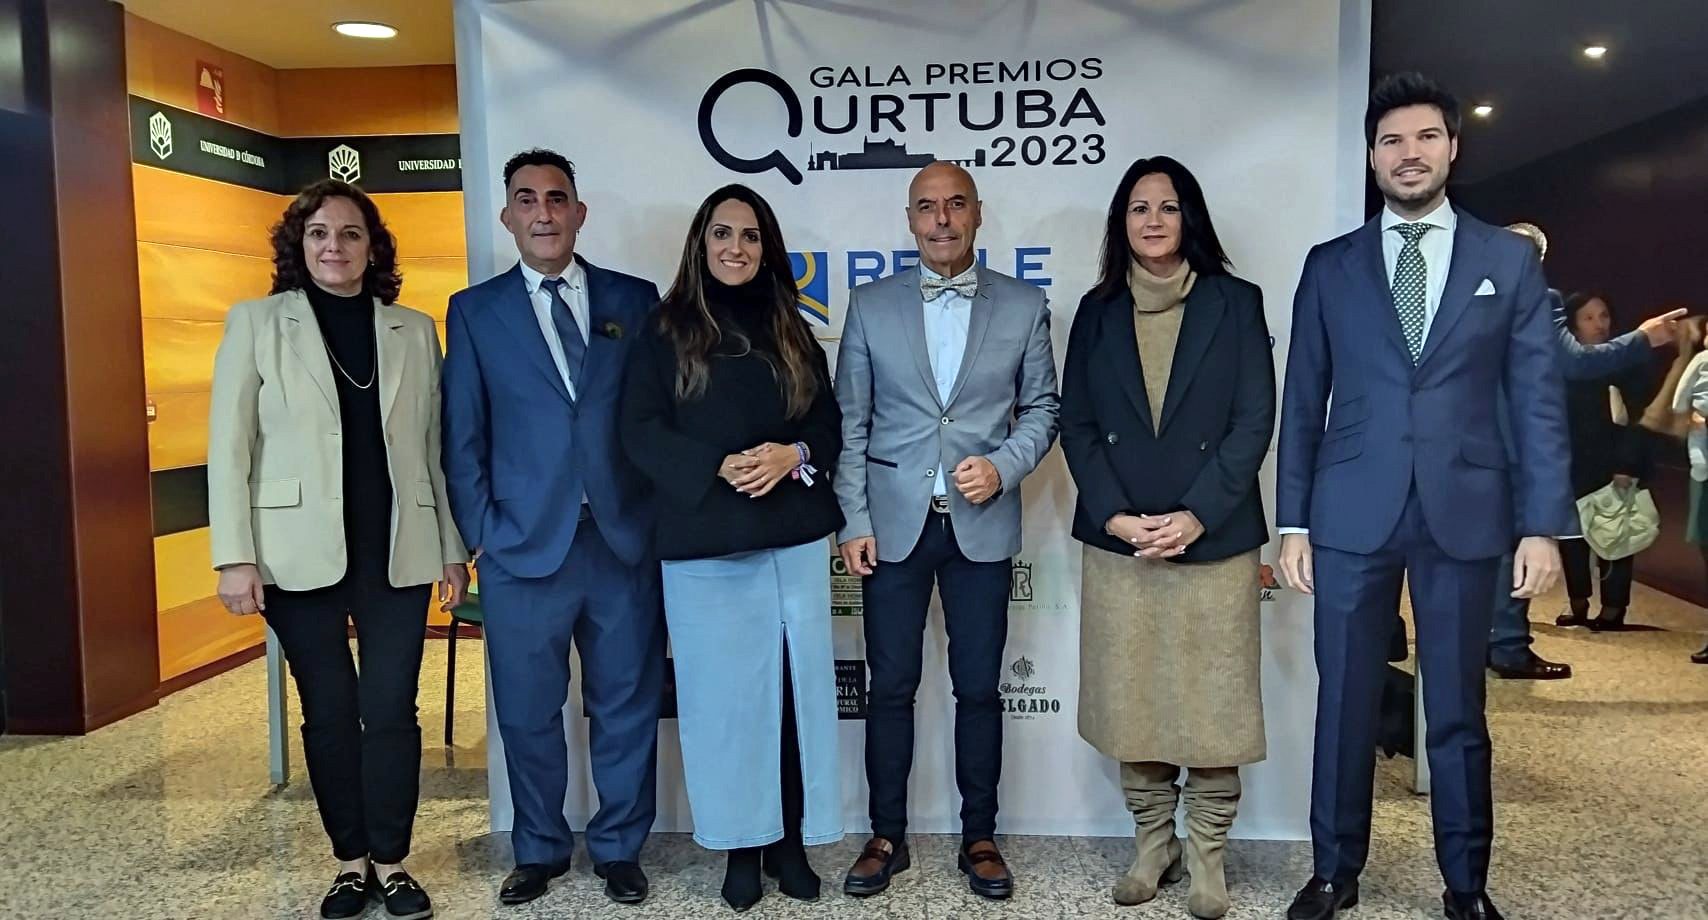 La Asociación Cultural “Córdoba solo hay una” premia a Fuente Obejuna por su Festival de Teatro Clásico